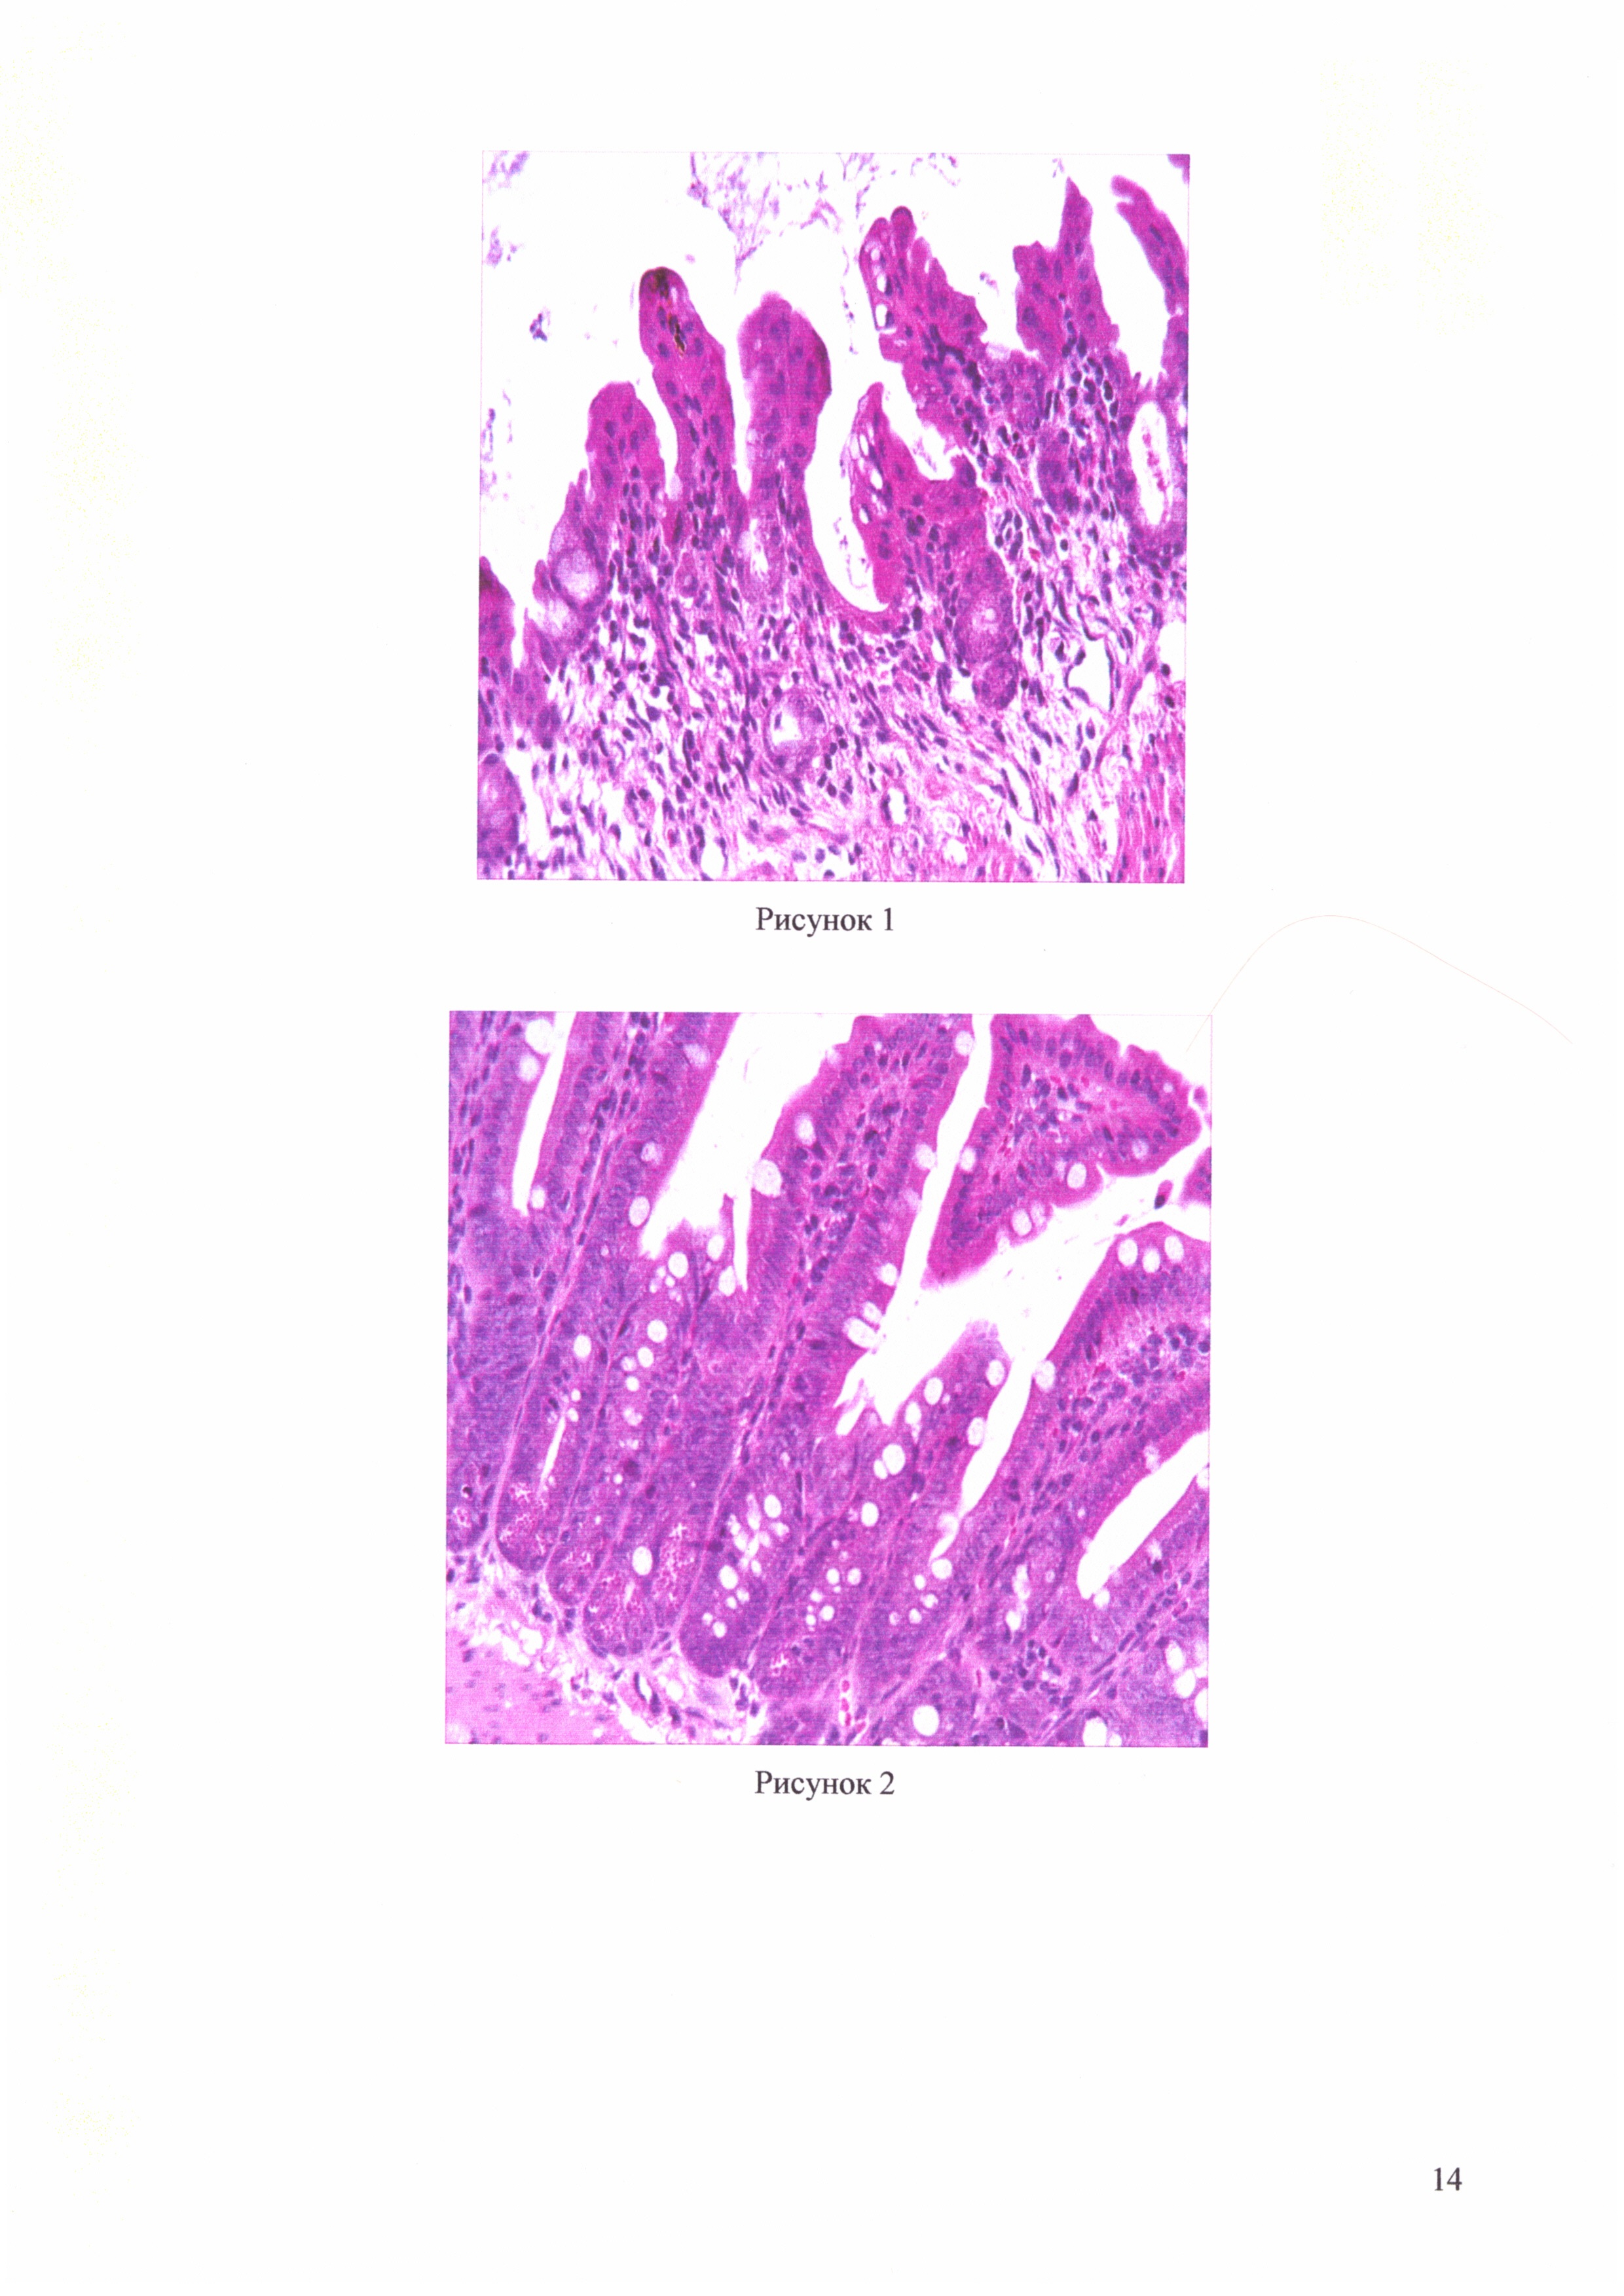 Фармацевтическая композиция для терапии воспалительных заболеваний слизистых оболочек кишечника на основе штамма Lactobacillus brevis 47f, проявляющая местную противовоспалительную активность